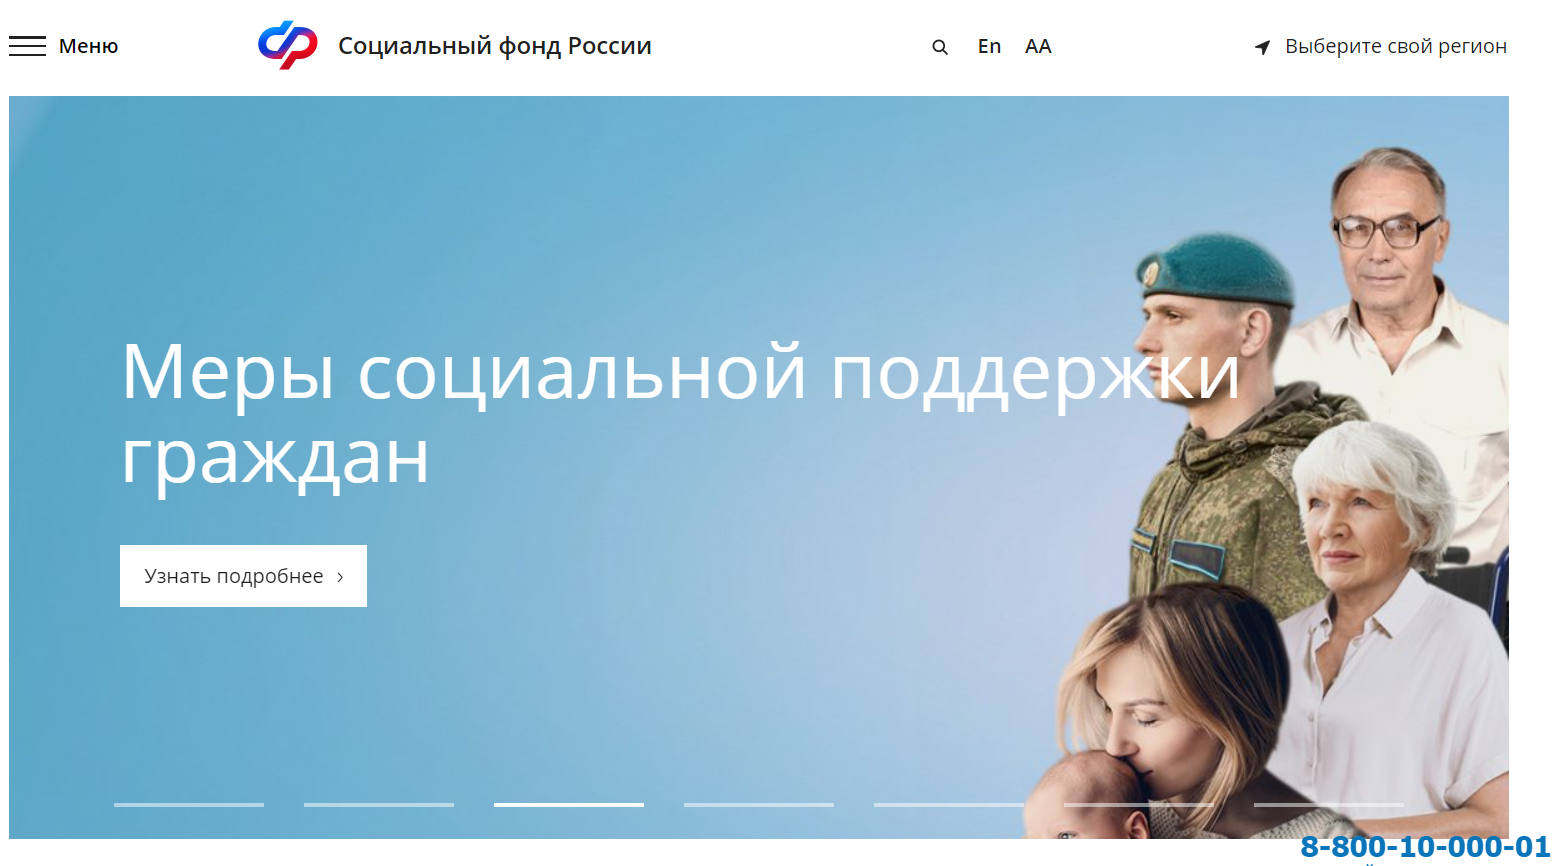 ФСС официальный сайт фонда социального страхования